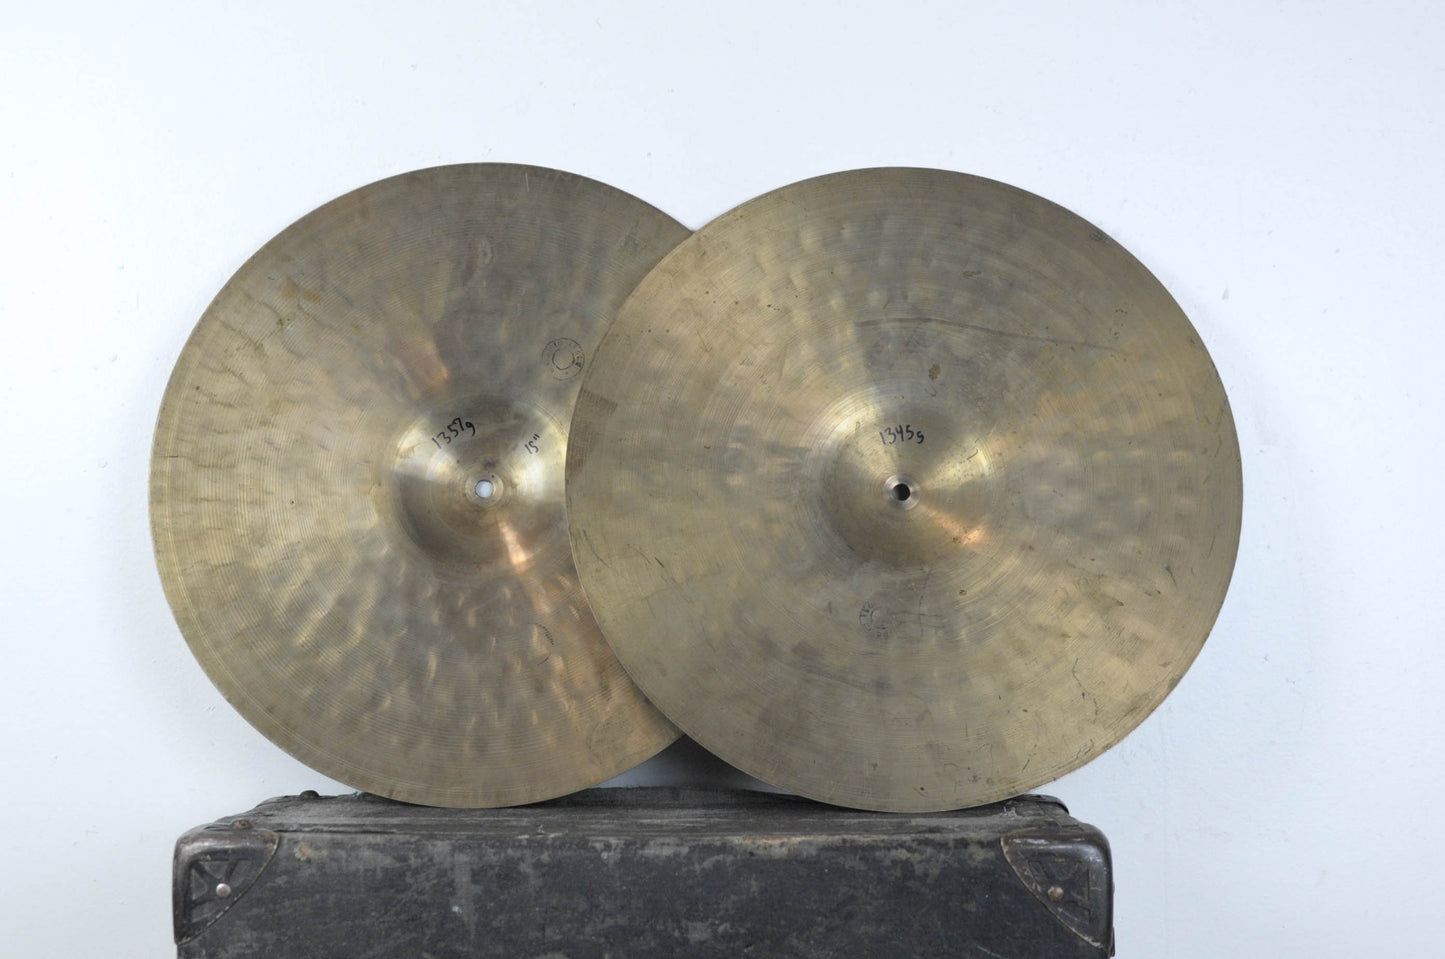 Vintage UFIP 15" Hi Hat Cymbals 1357g 1345g